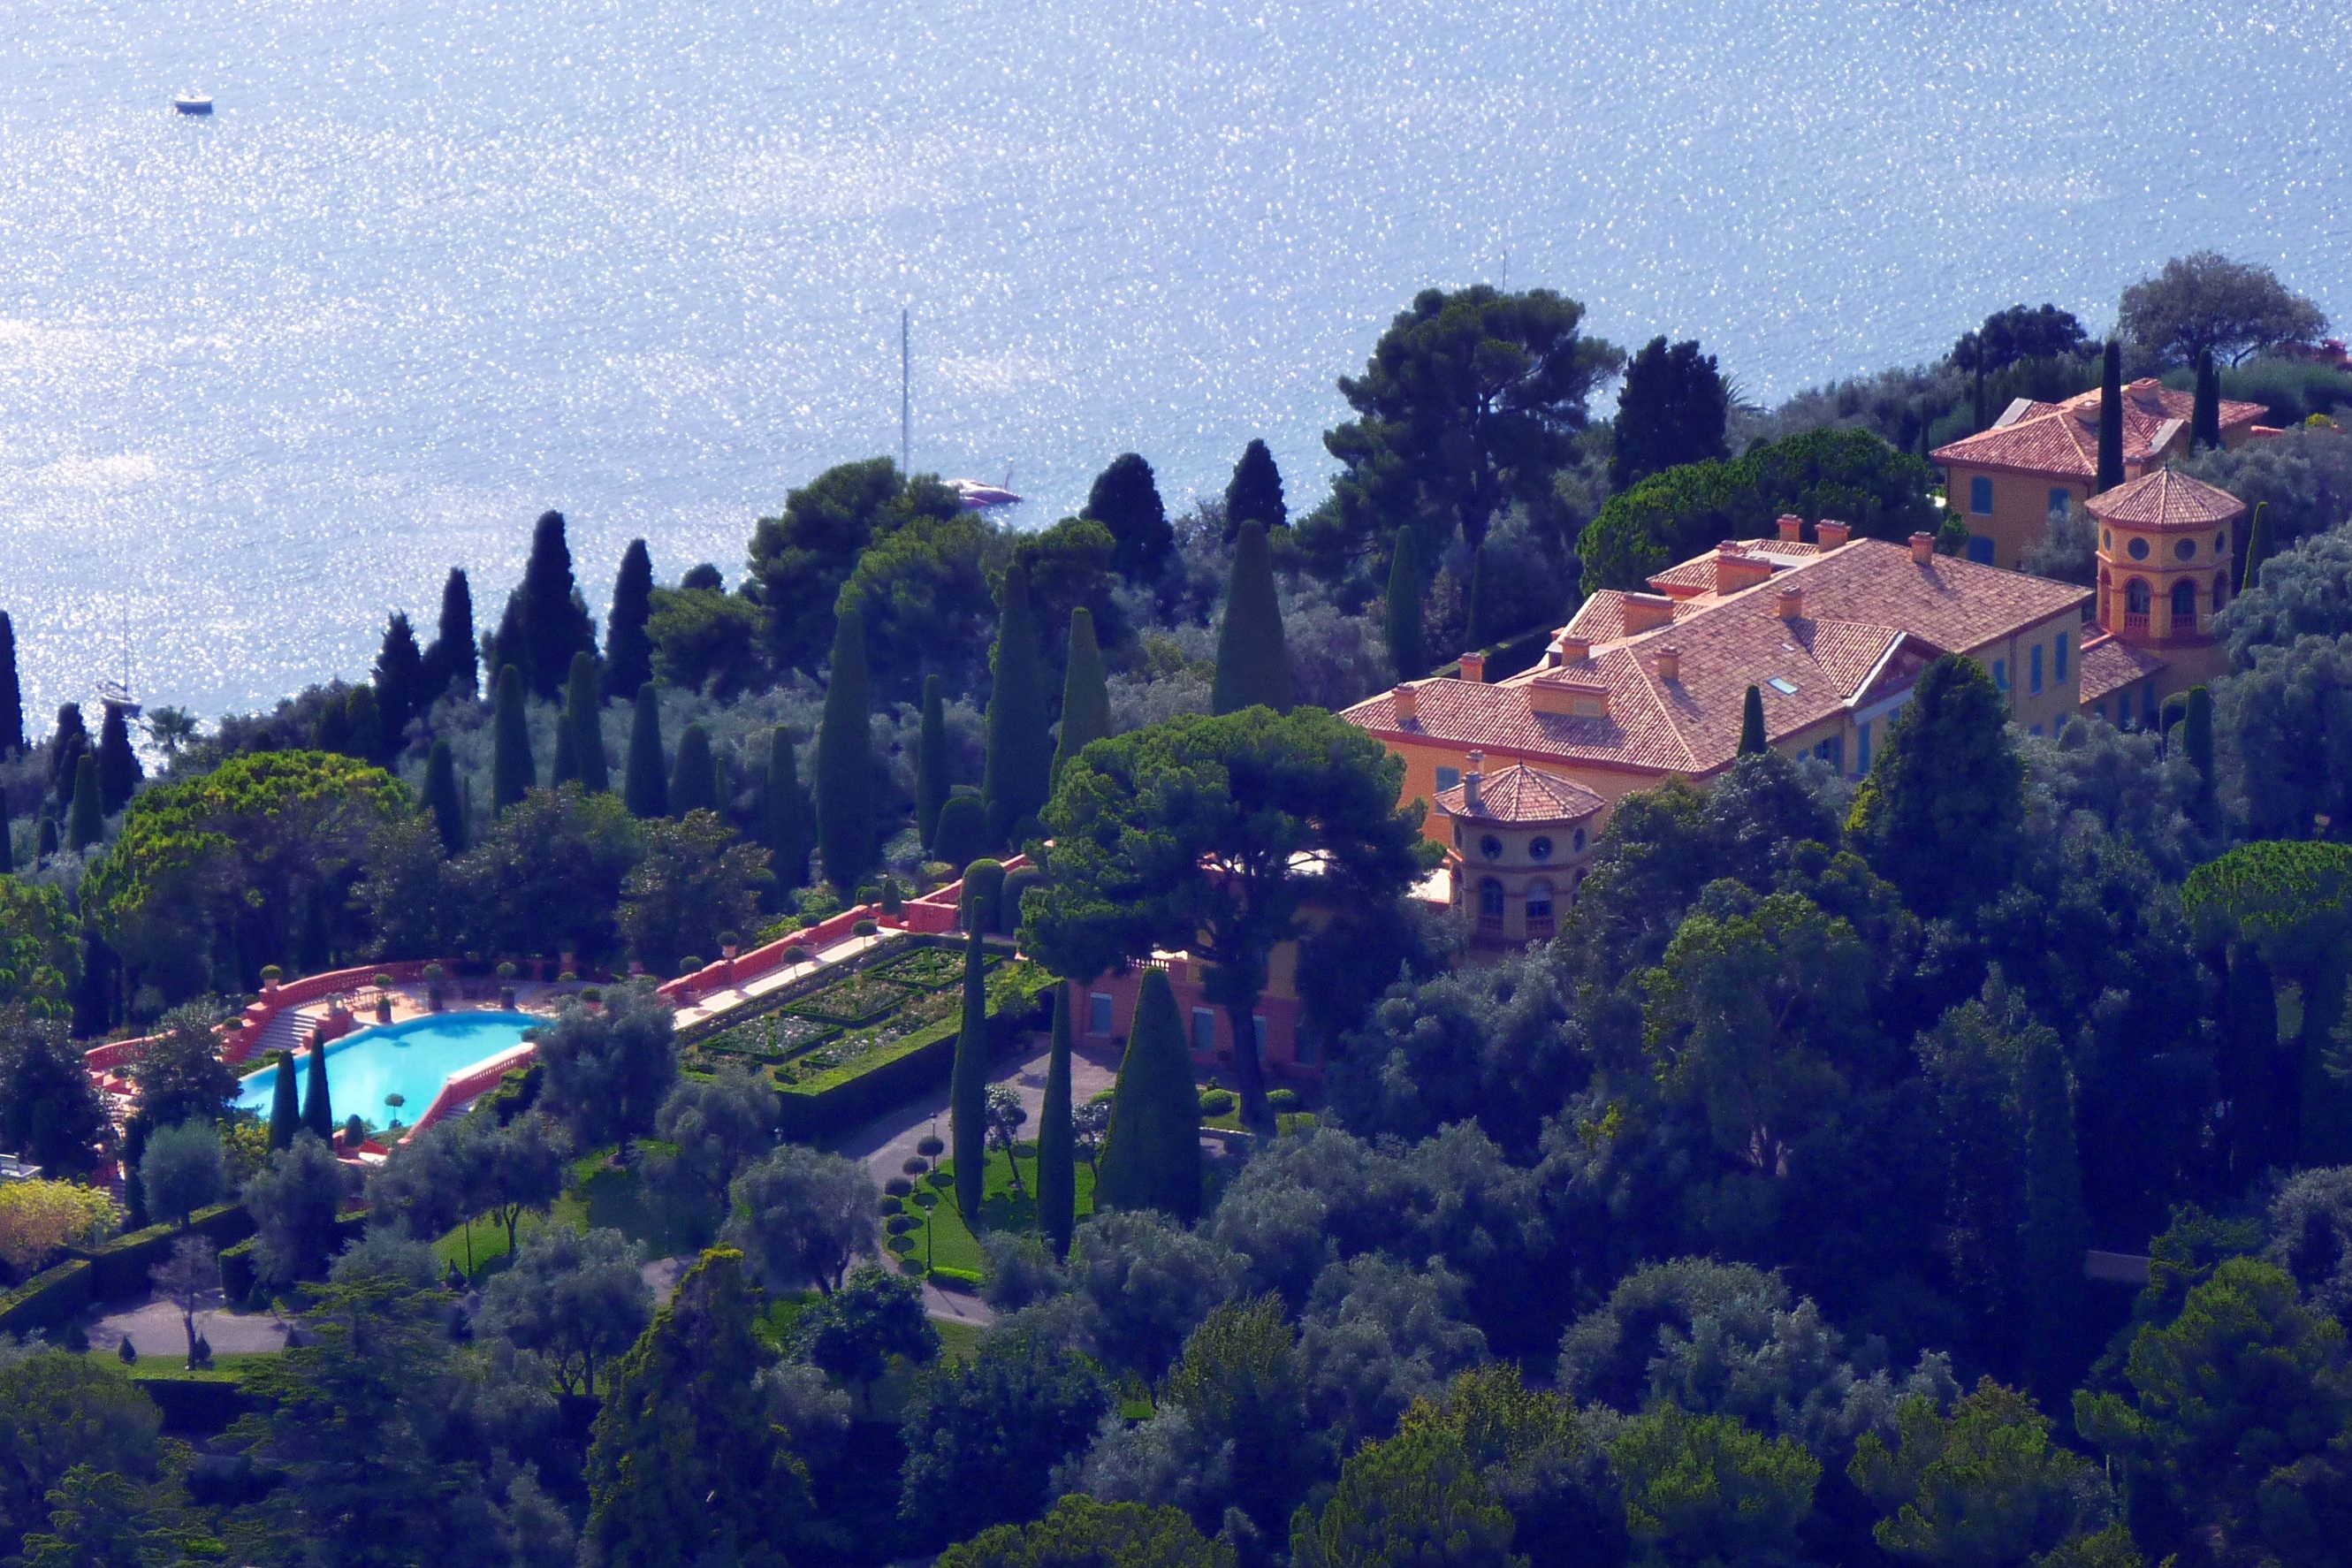 The Villa Leopolda